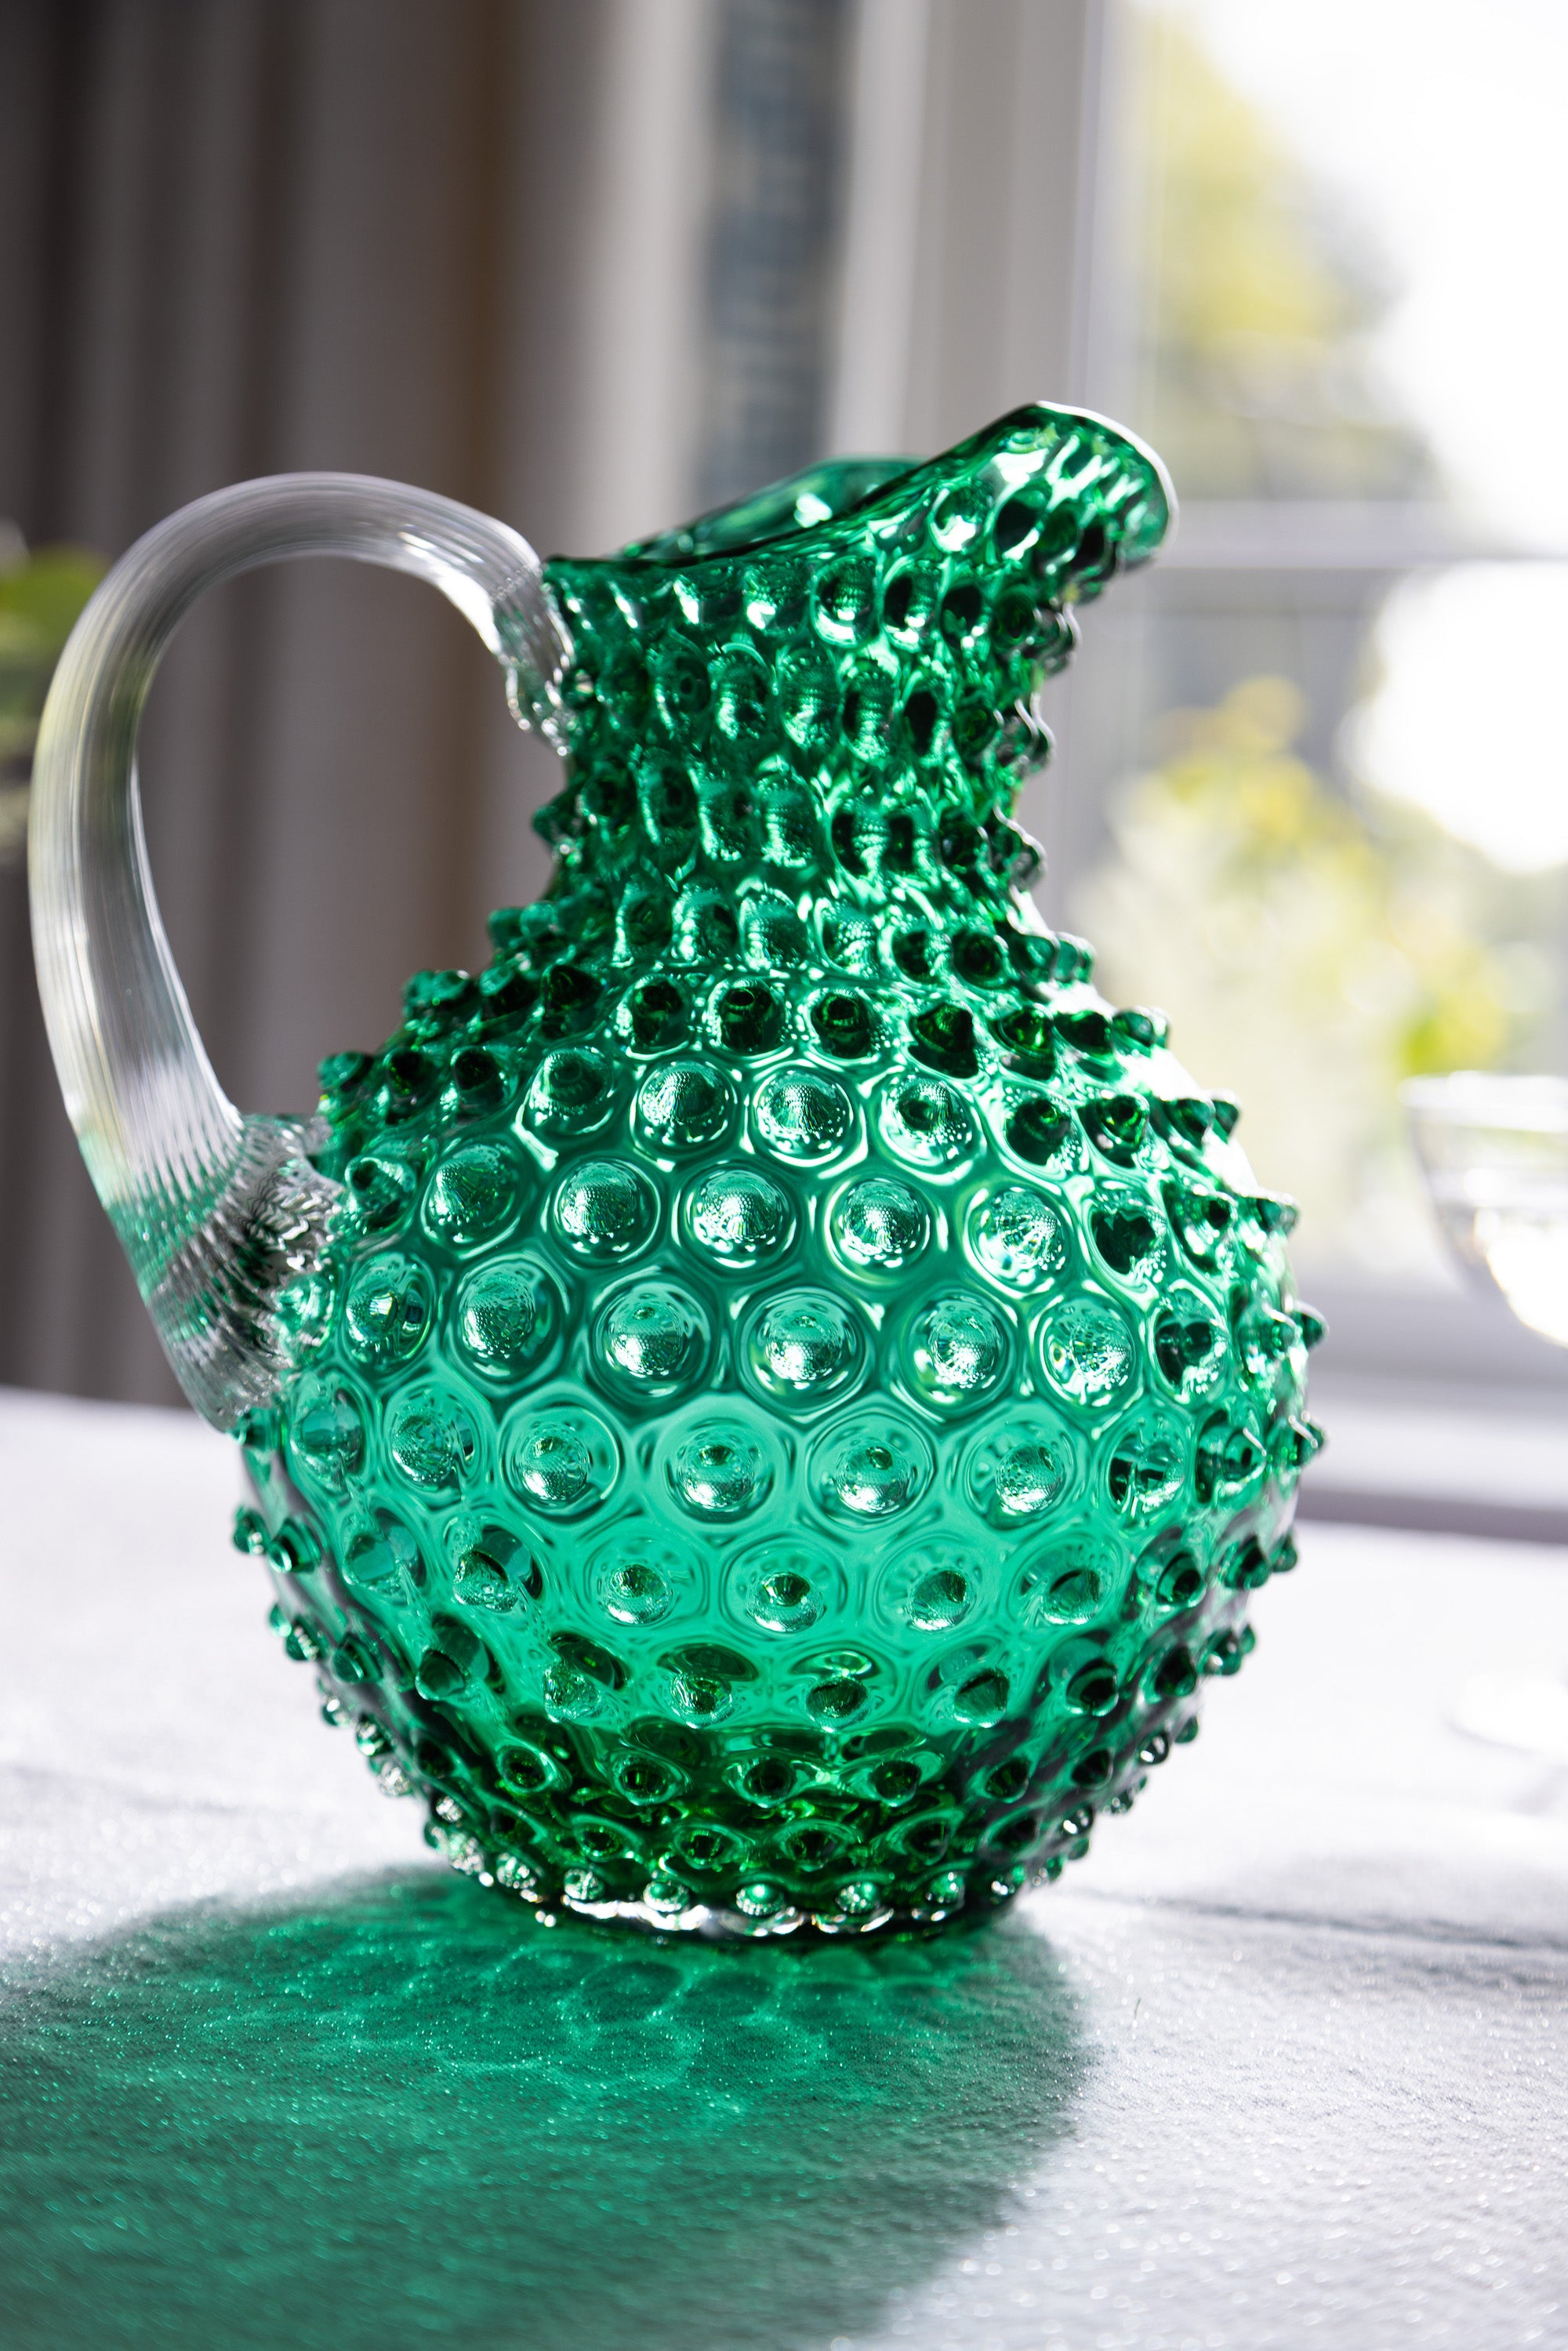 Underlay dark green hobnail glass jug